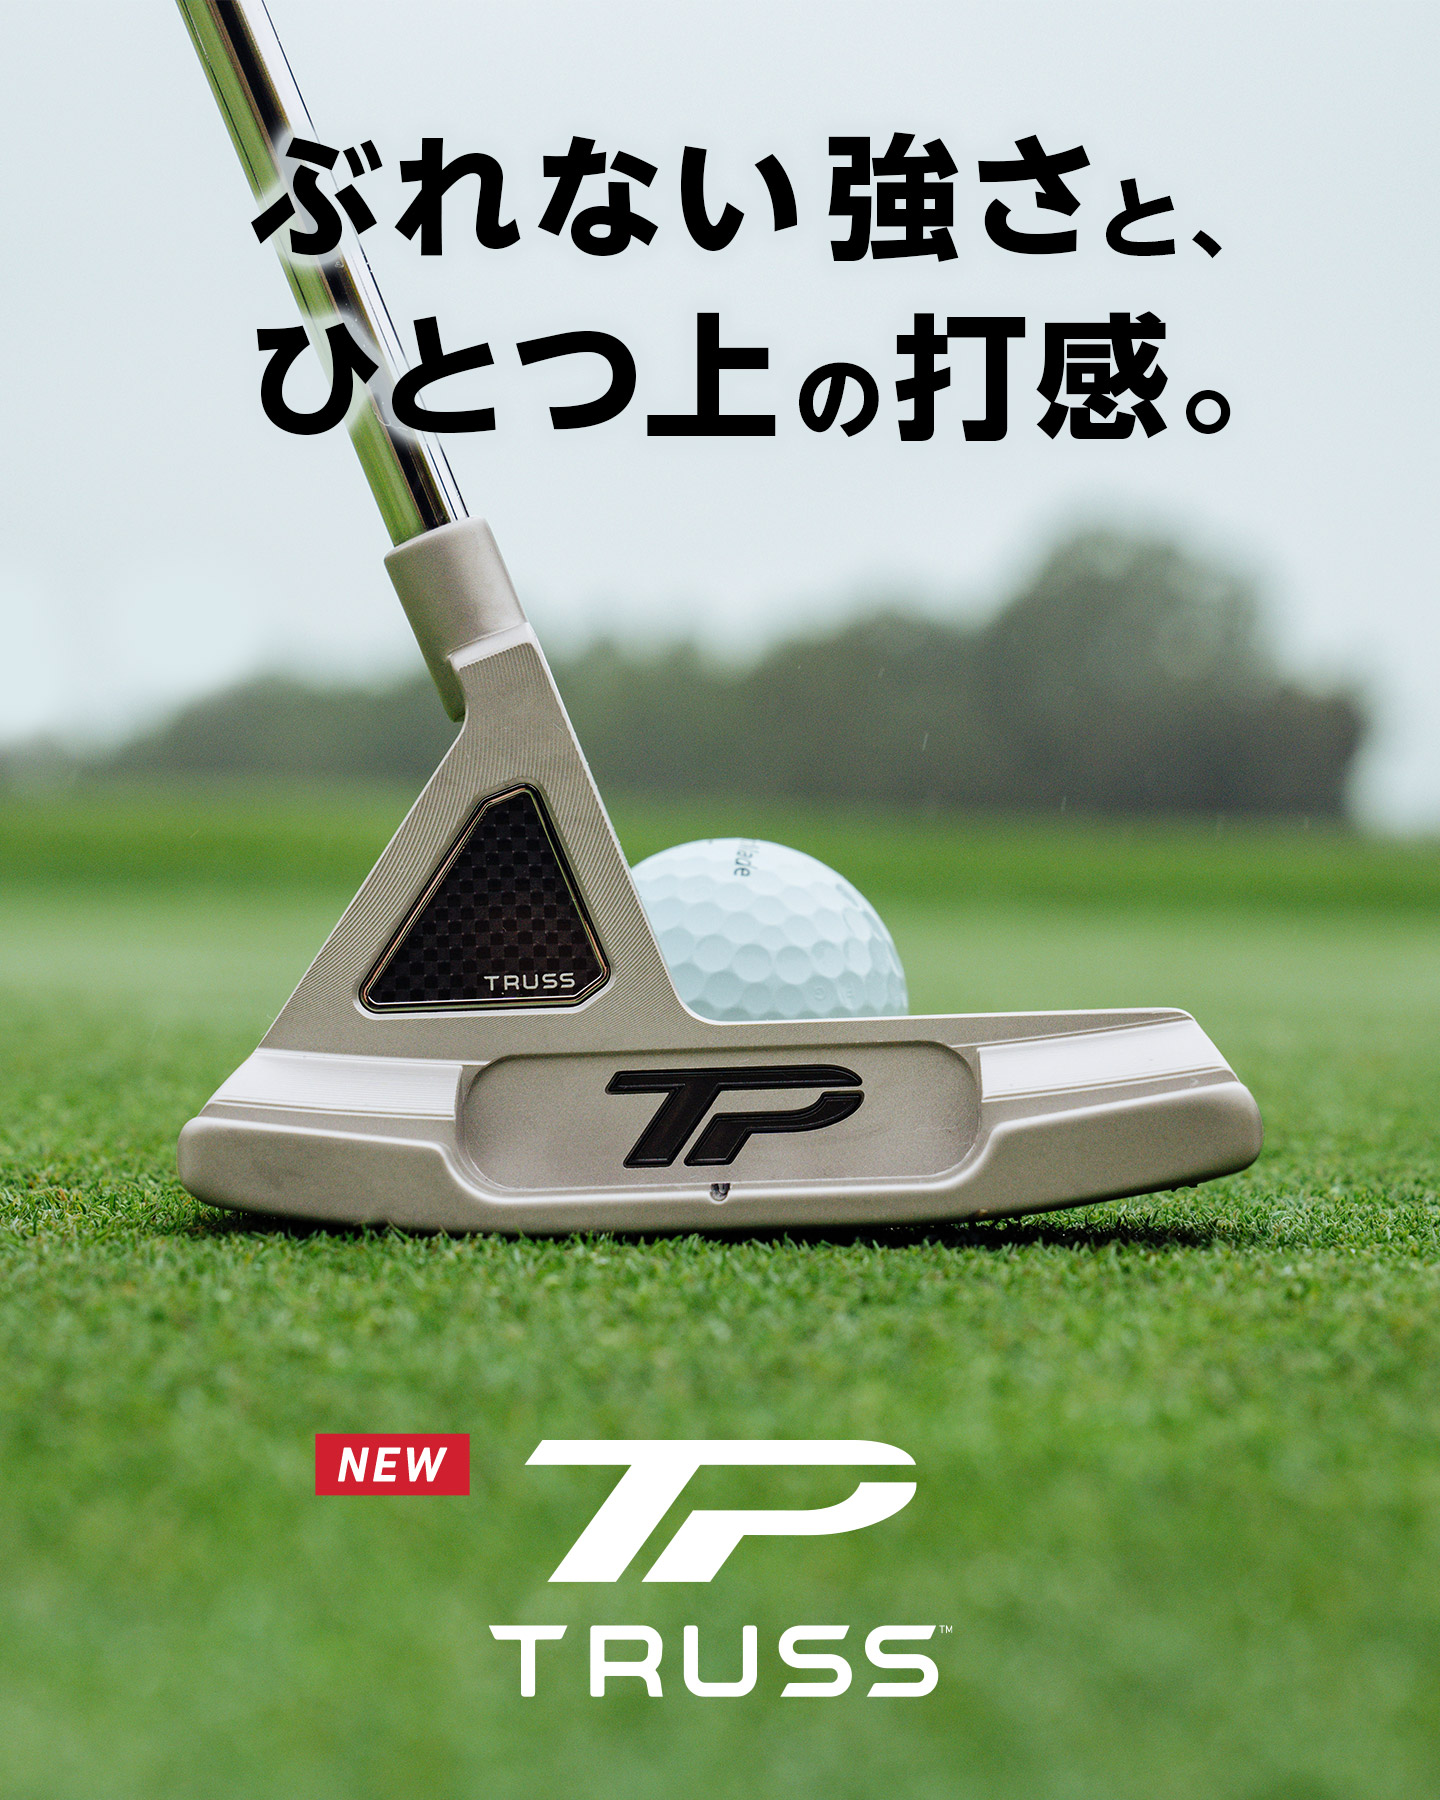 パター特設サイト | TaylorMade Golf | テーラーメイド ゴルフ公式サイト